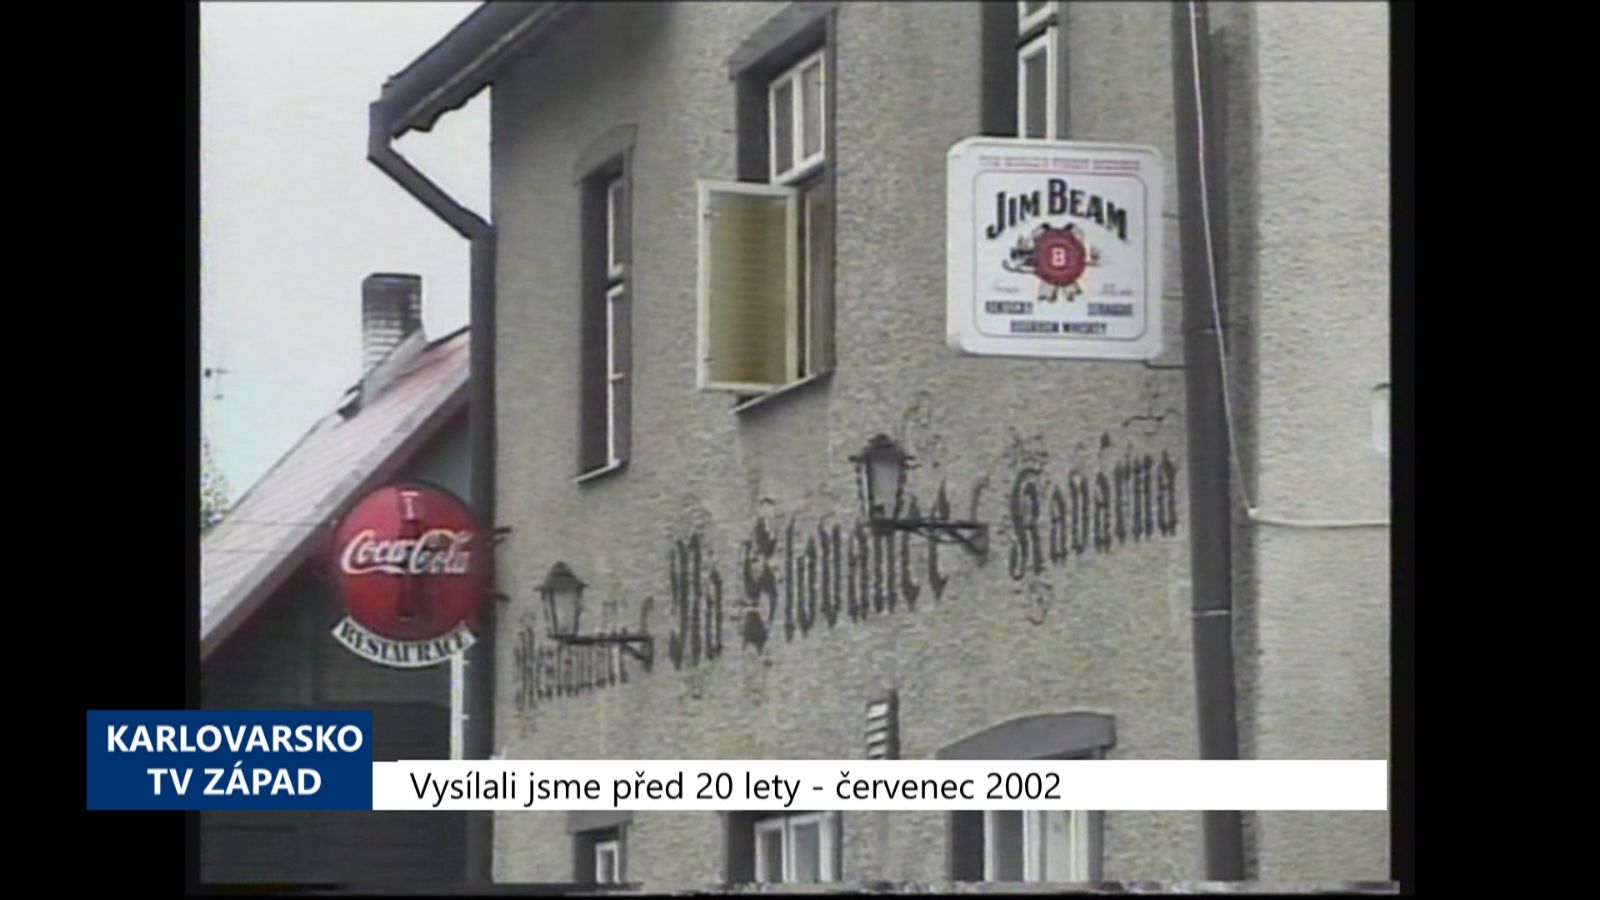 2002 – Sokolov: Vyhláška má omezit restaurace do 22 hodin (TV Západ)